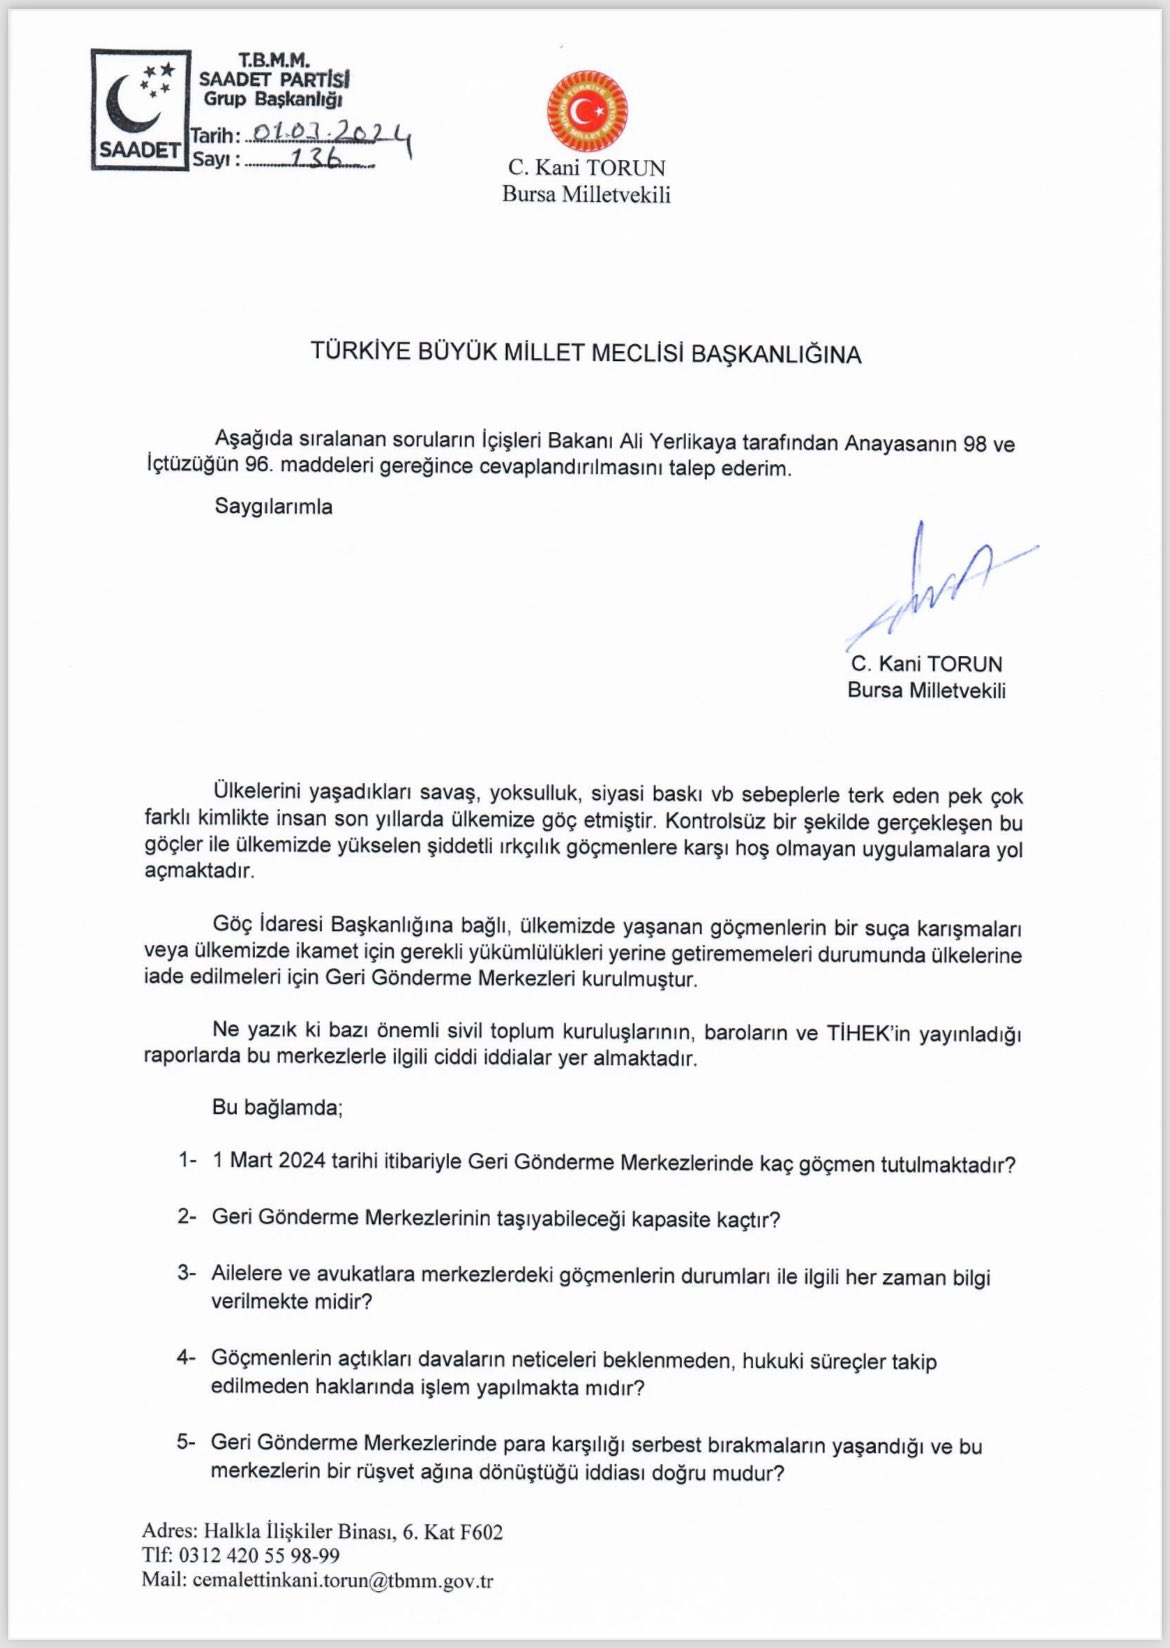 مقترح لإجراء تحقيق حول أوضاع مراكز ترحيل المهاجرين في تركيا - 4 آذار 2024 (Kani Torun/ تويتر)